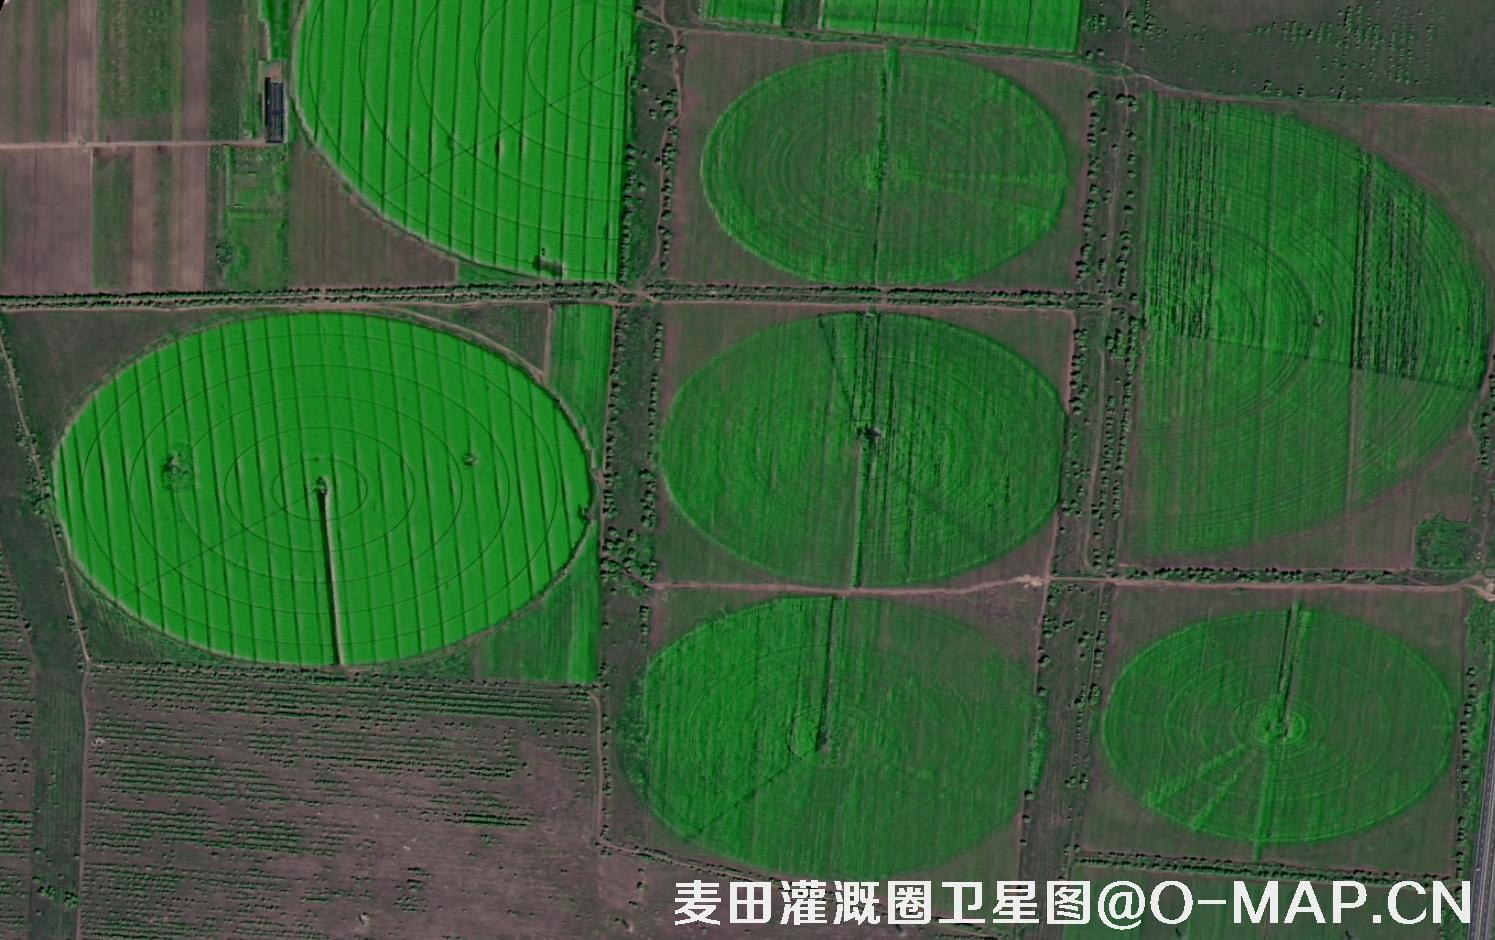 高分二号拍摄的麦田灌溉圈卫星图